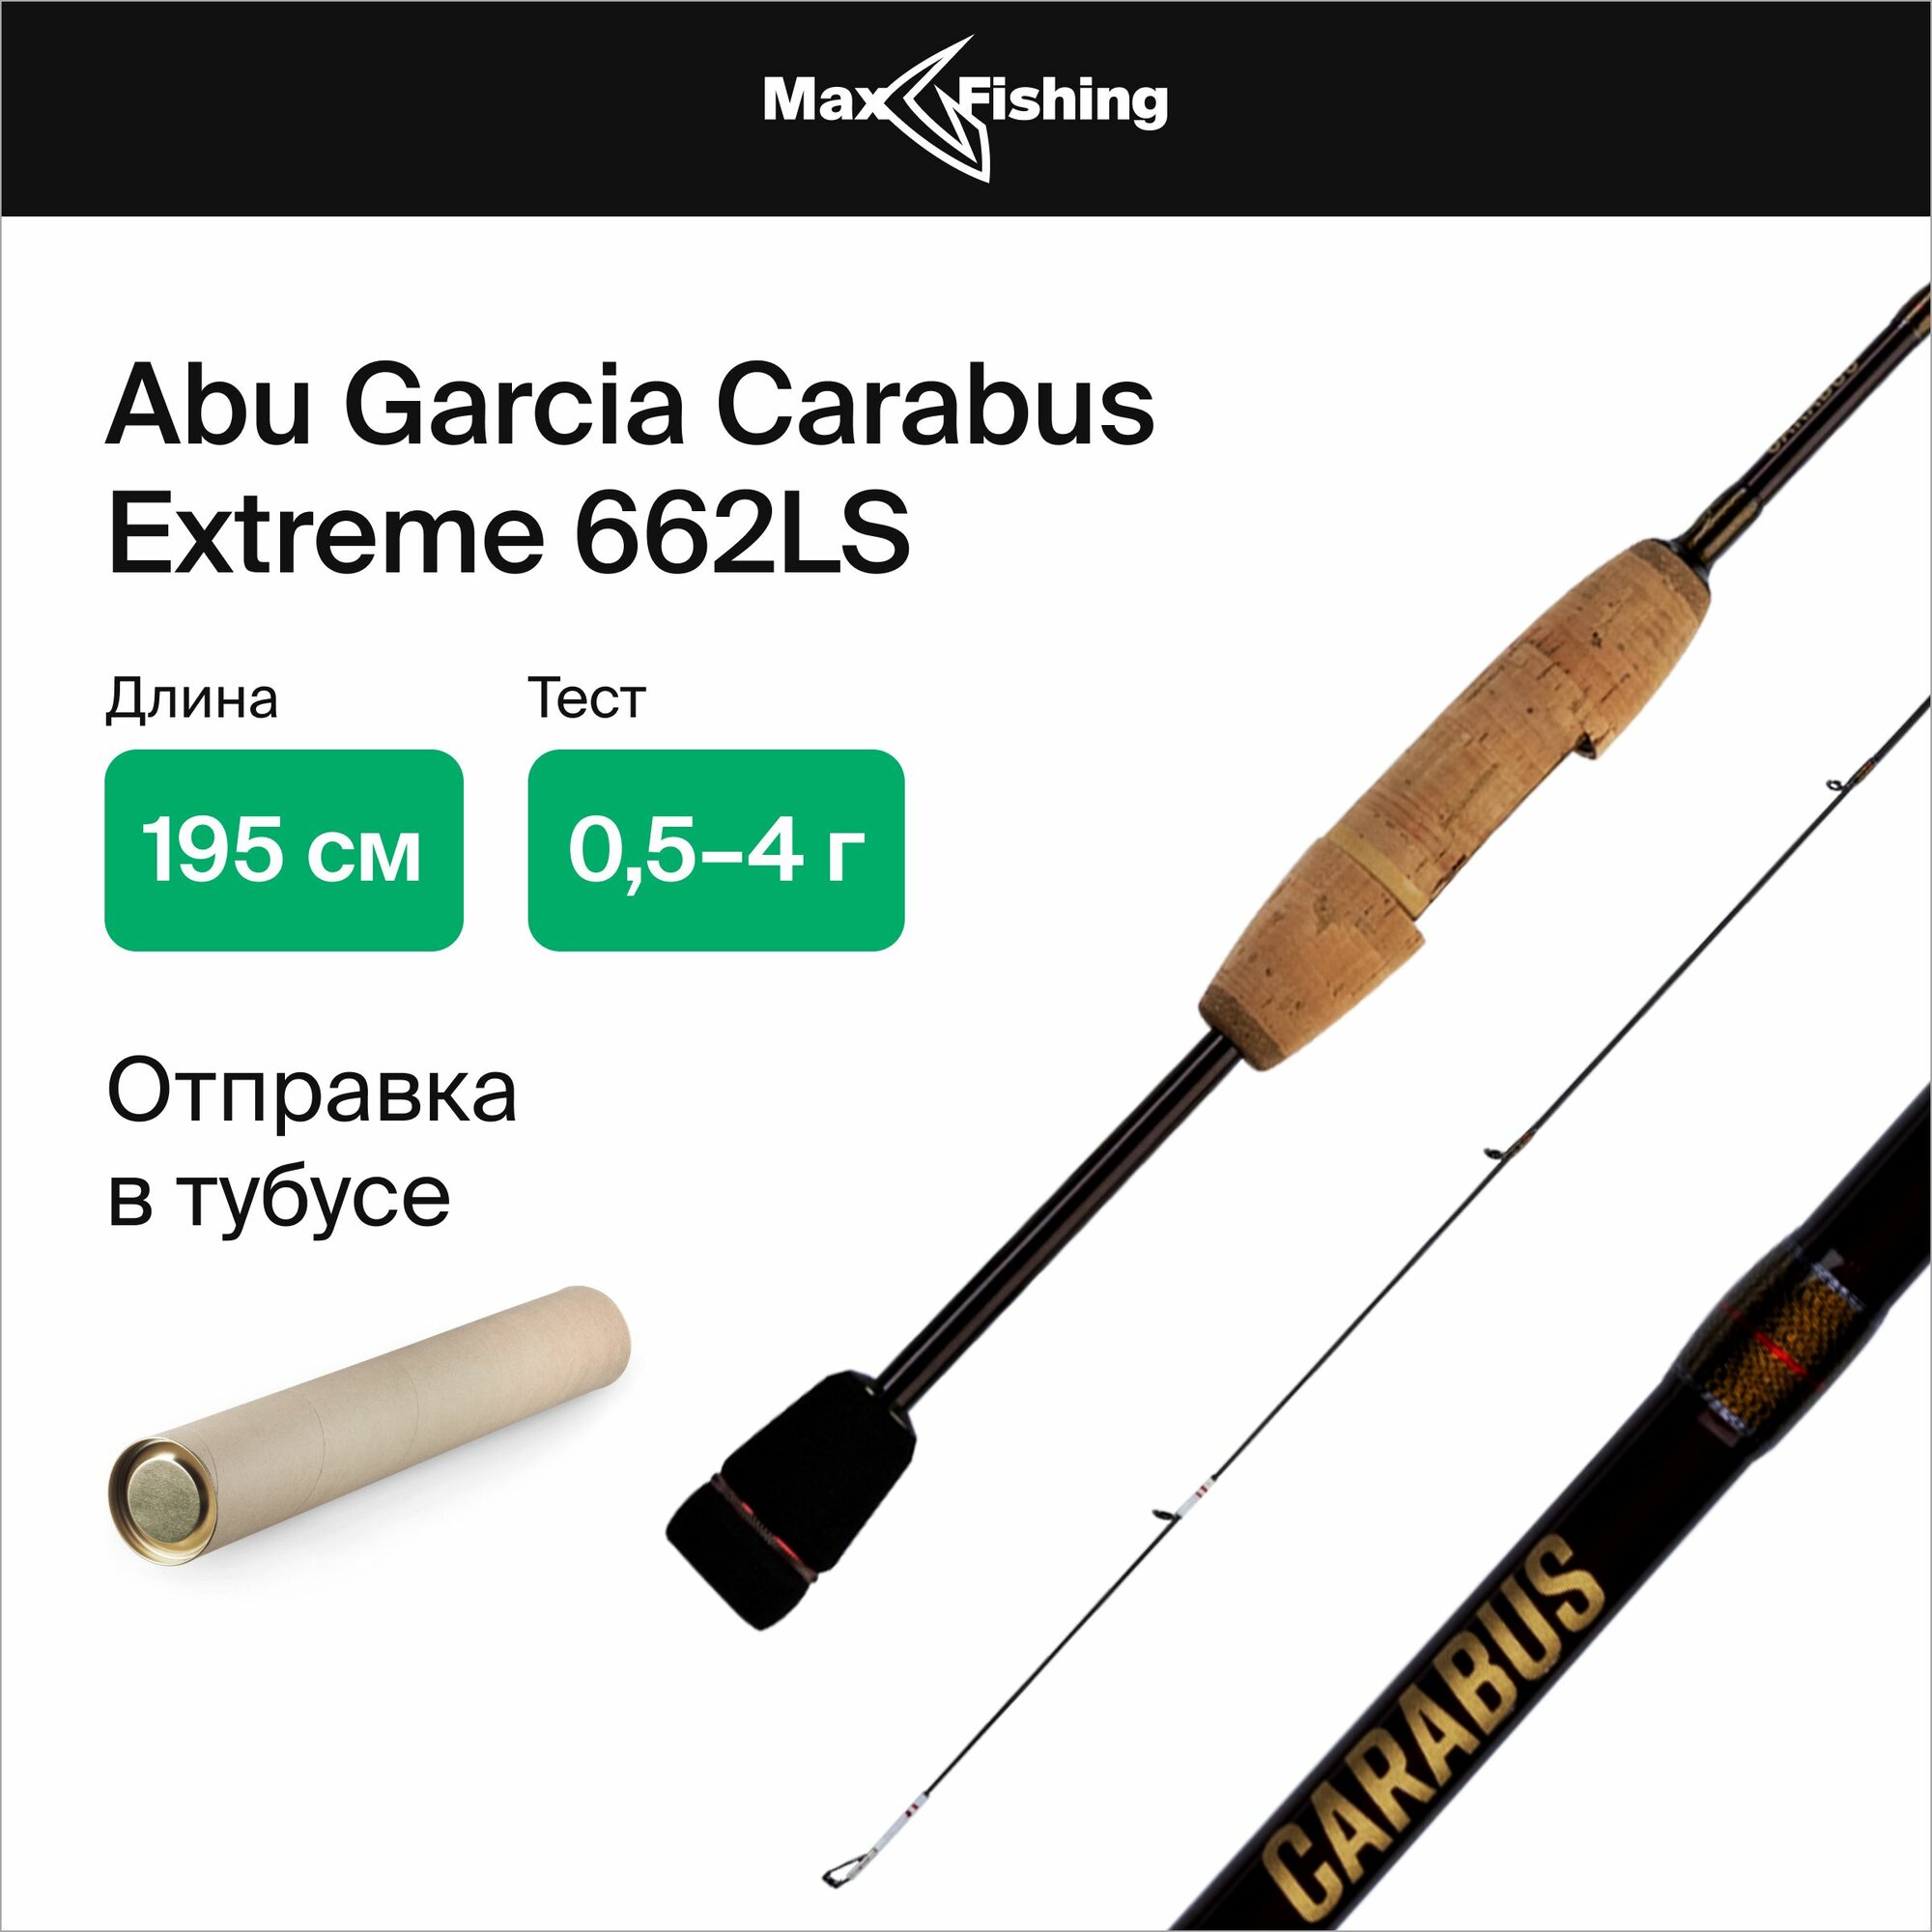 Спиннинг для рыбалки Abu Garcia Carabus Extreme 662LS 0,5-4гр, 195 см, для ловли форели, микродижга и рокфишинга, удилище спиннинговое, ультралайт